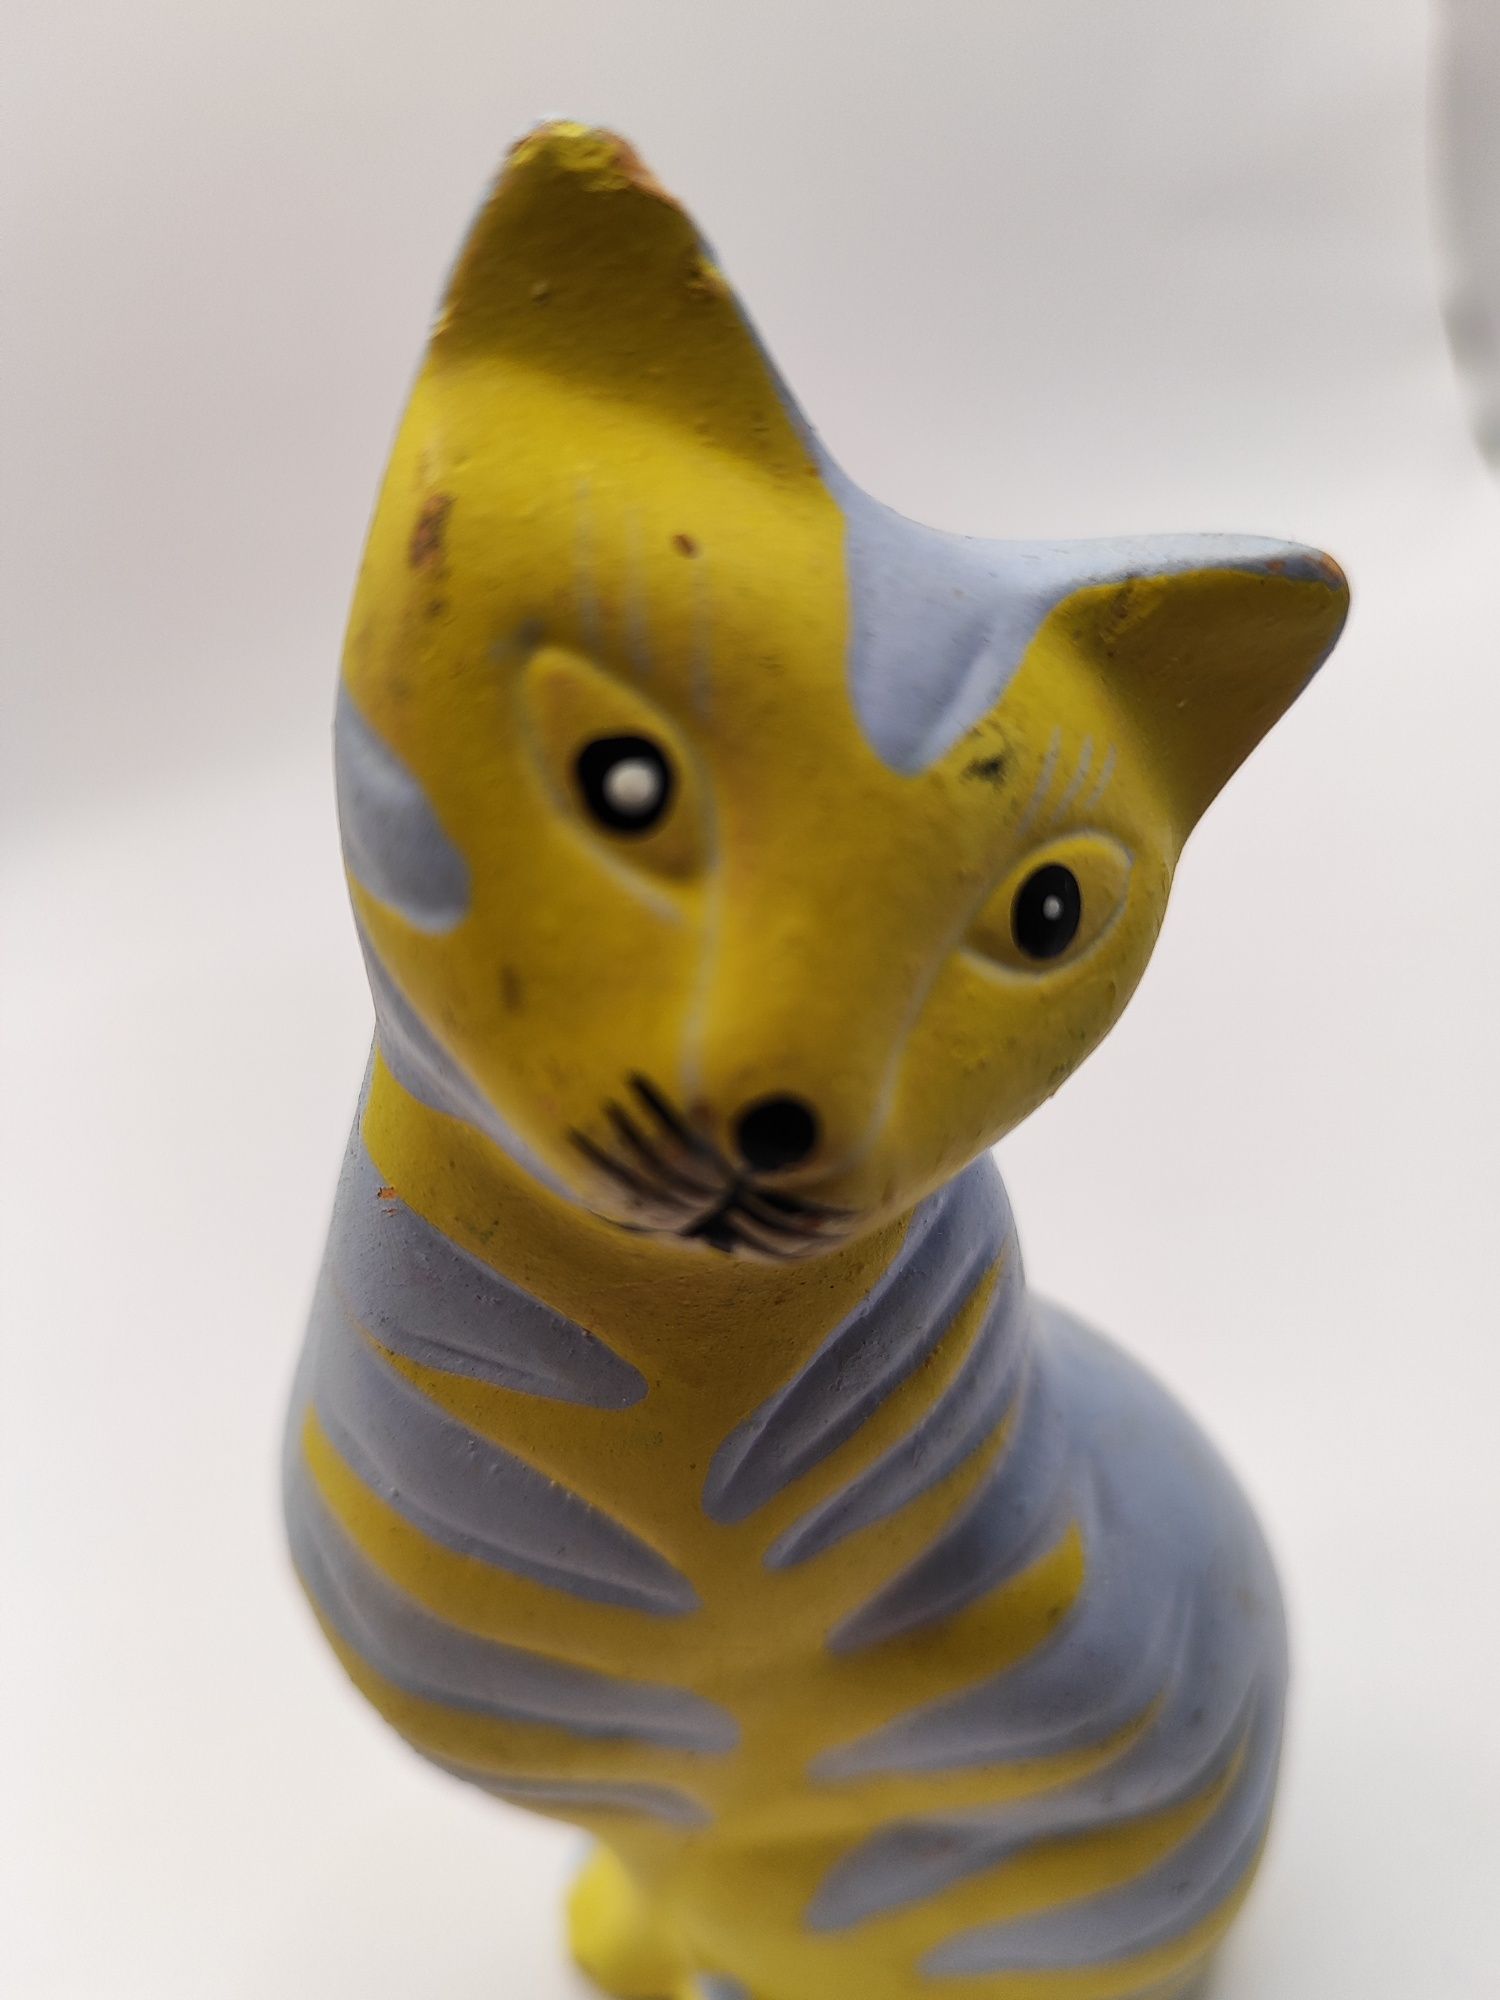 Ceramiczny kot w pasy żywe kolory żółty